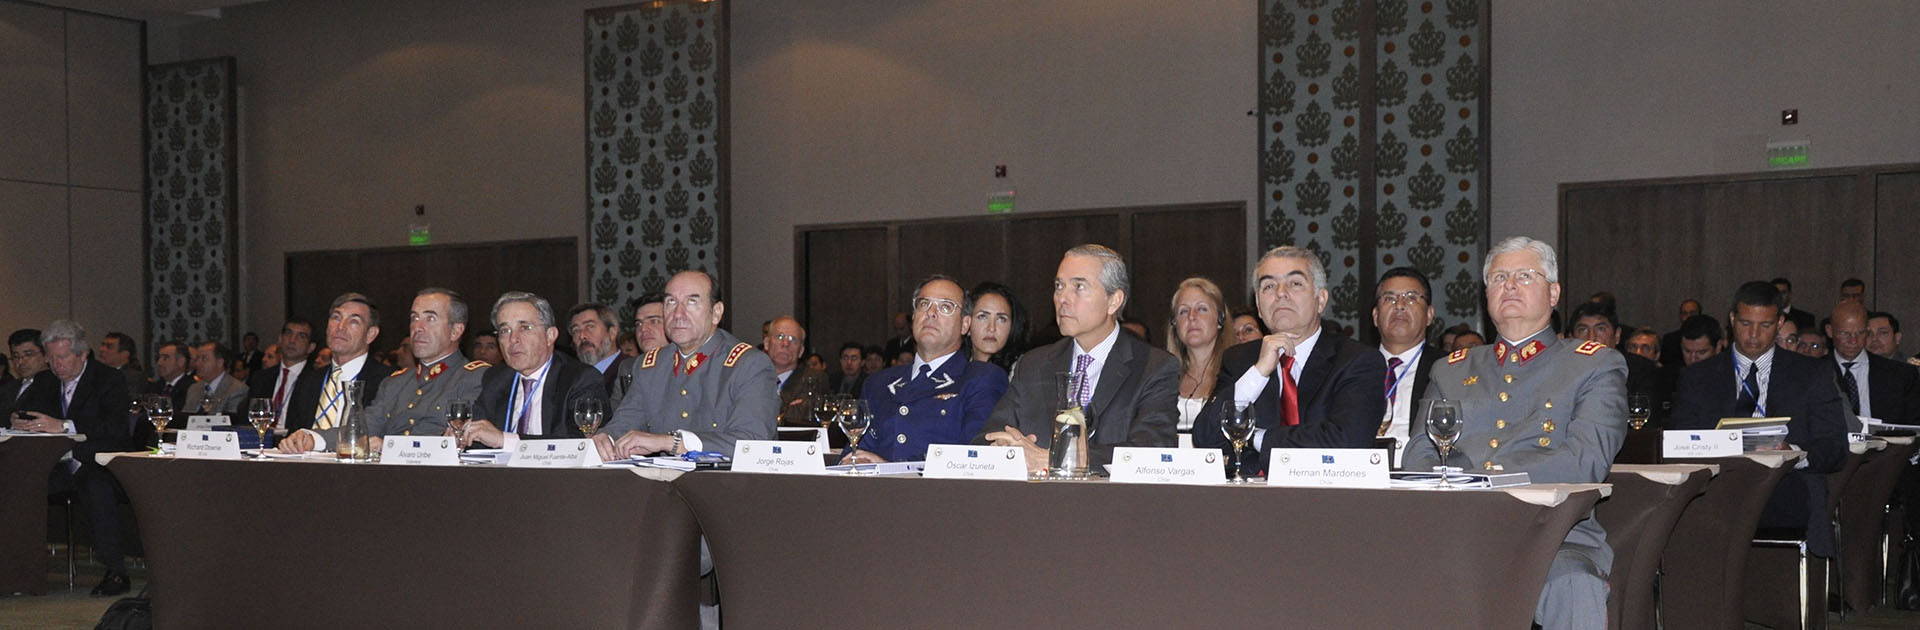 SRC 2011 Chile Plenary